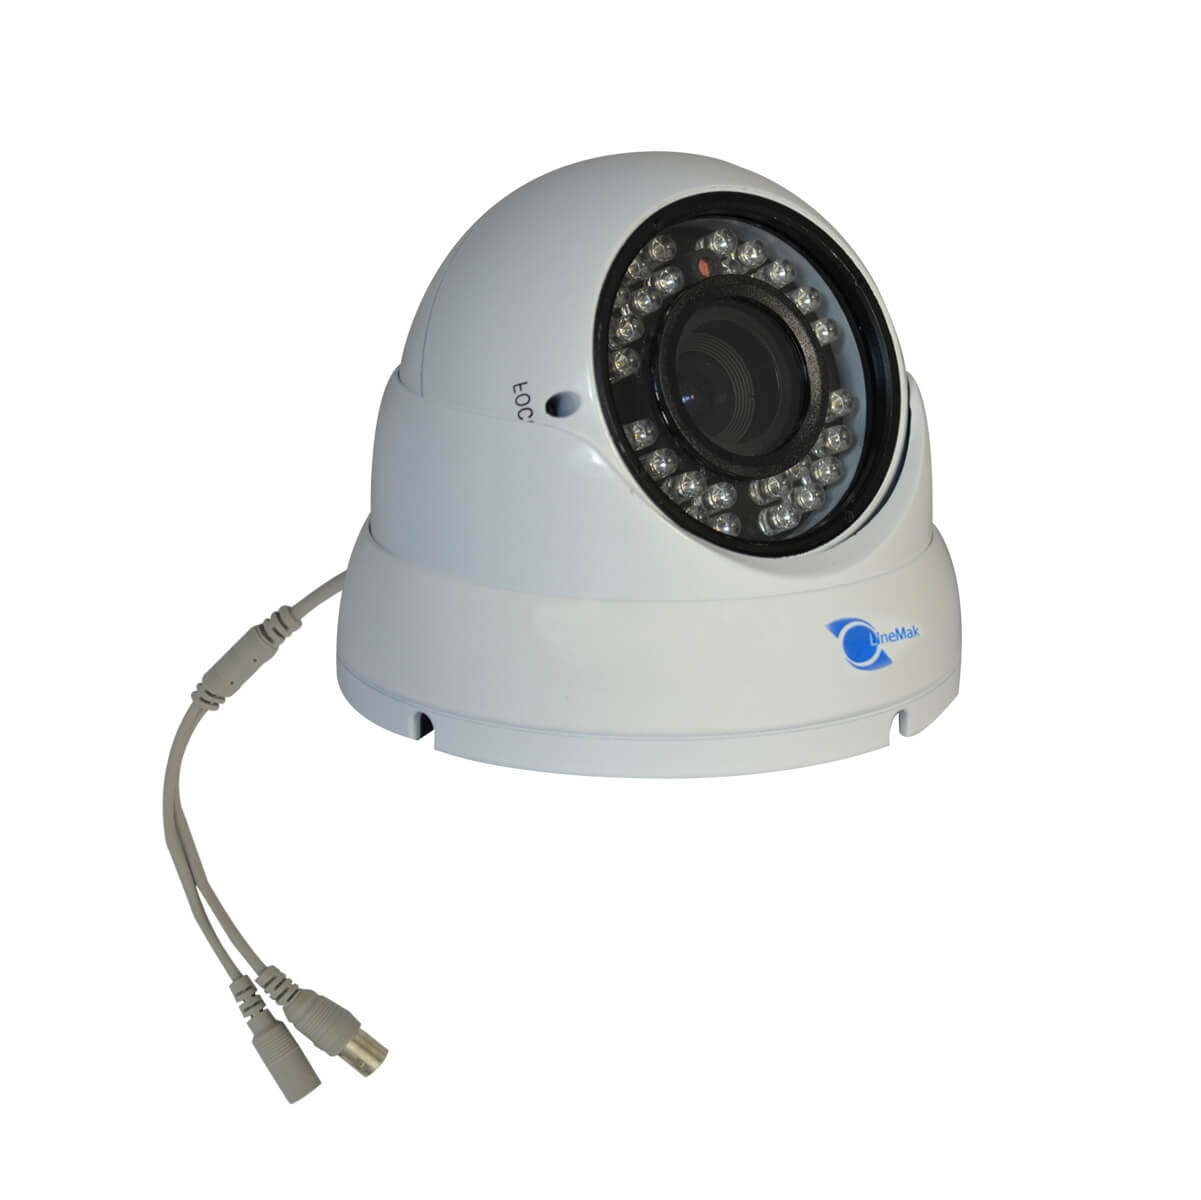 Camara tipo domo, Sensor CMOS 1/3, resolucion 600TVL, 24 LEDs, 30m IR